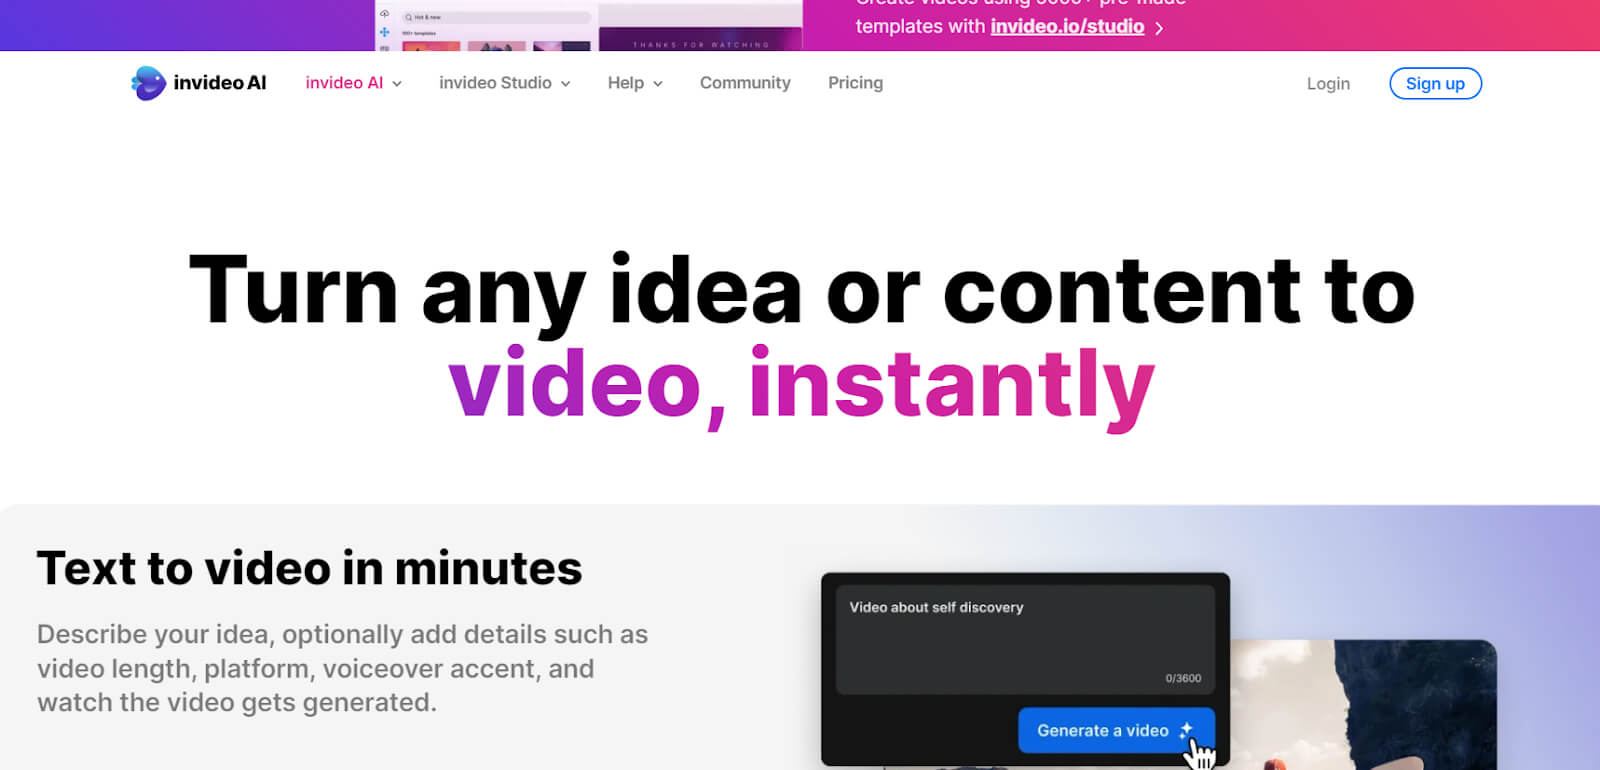  uma-imagem-em-  -descrevendo-a-página-inicial-do-InVideo A página inicial do InVideo é a primeira página que os usuários veem ao acessar o site. Ela é projetada para fornecer uma visão geral do que o InVideo oferece e orientar os usuários a navegar pelo site. A página inicial apresenta uma breve descrição do InVideo, seus recursos e benefícios, além de mostrar exemplos de vídeos criados com a plataforma. Os 